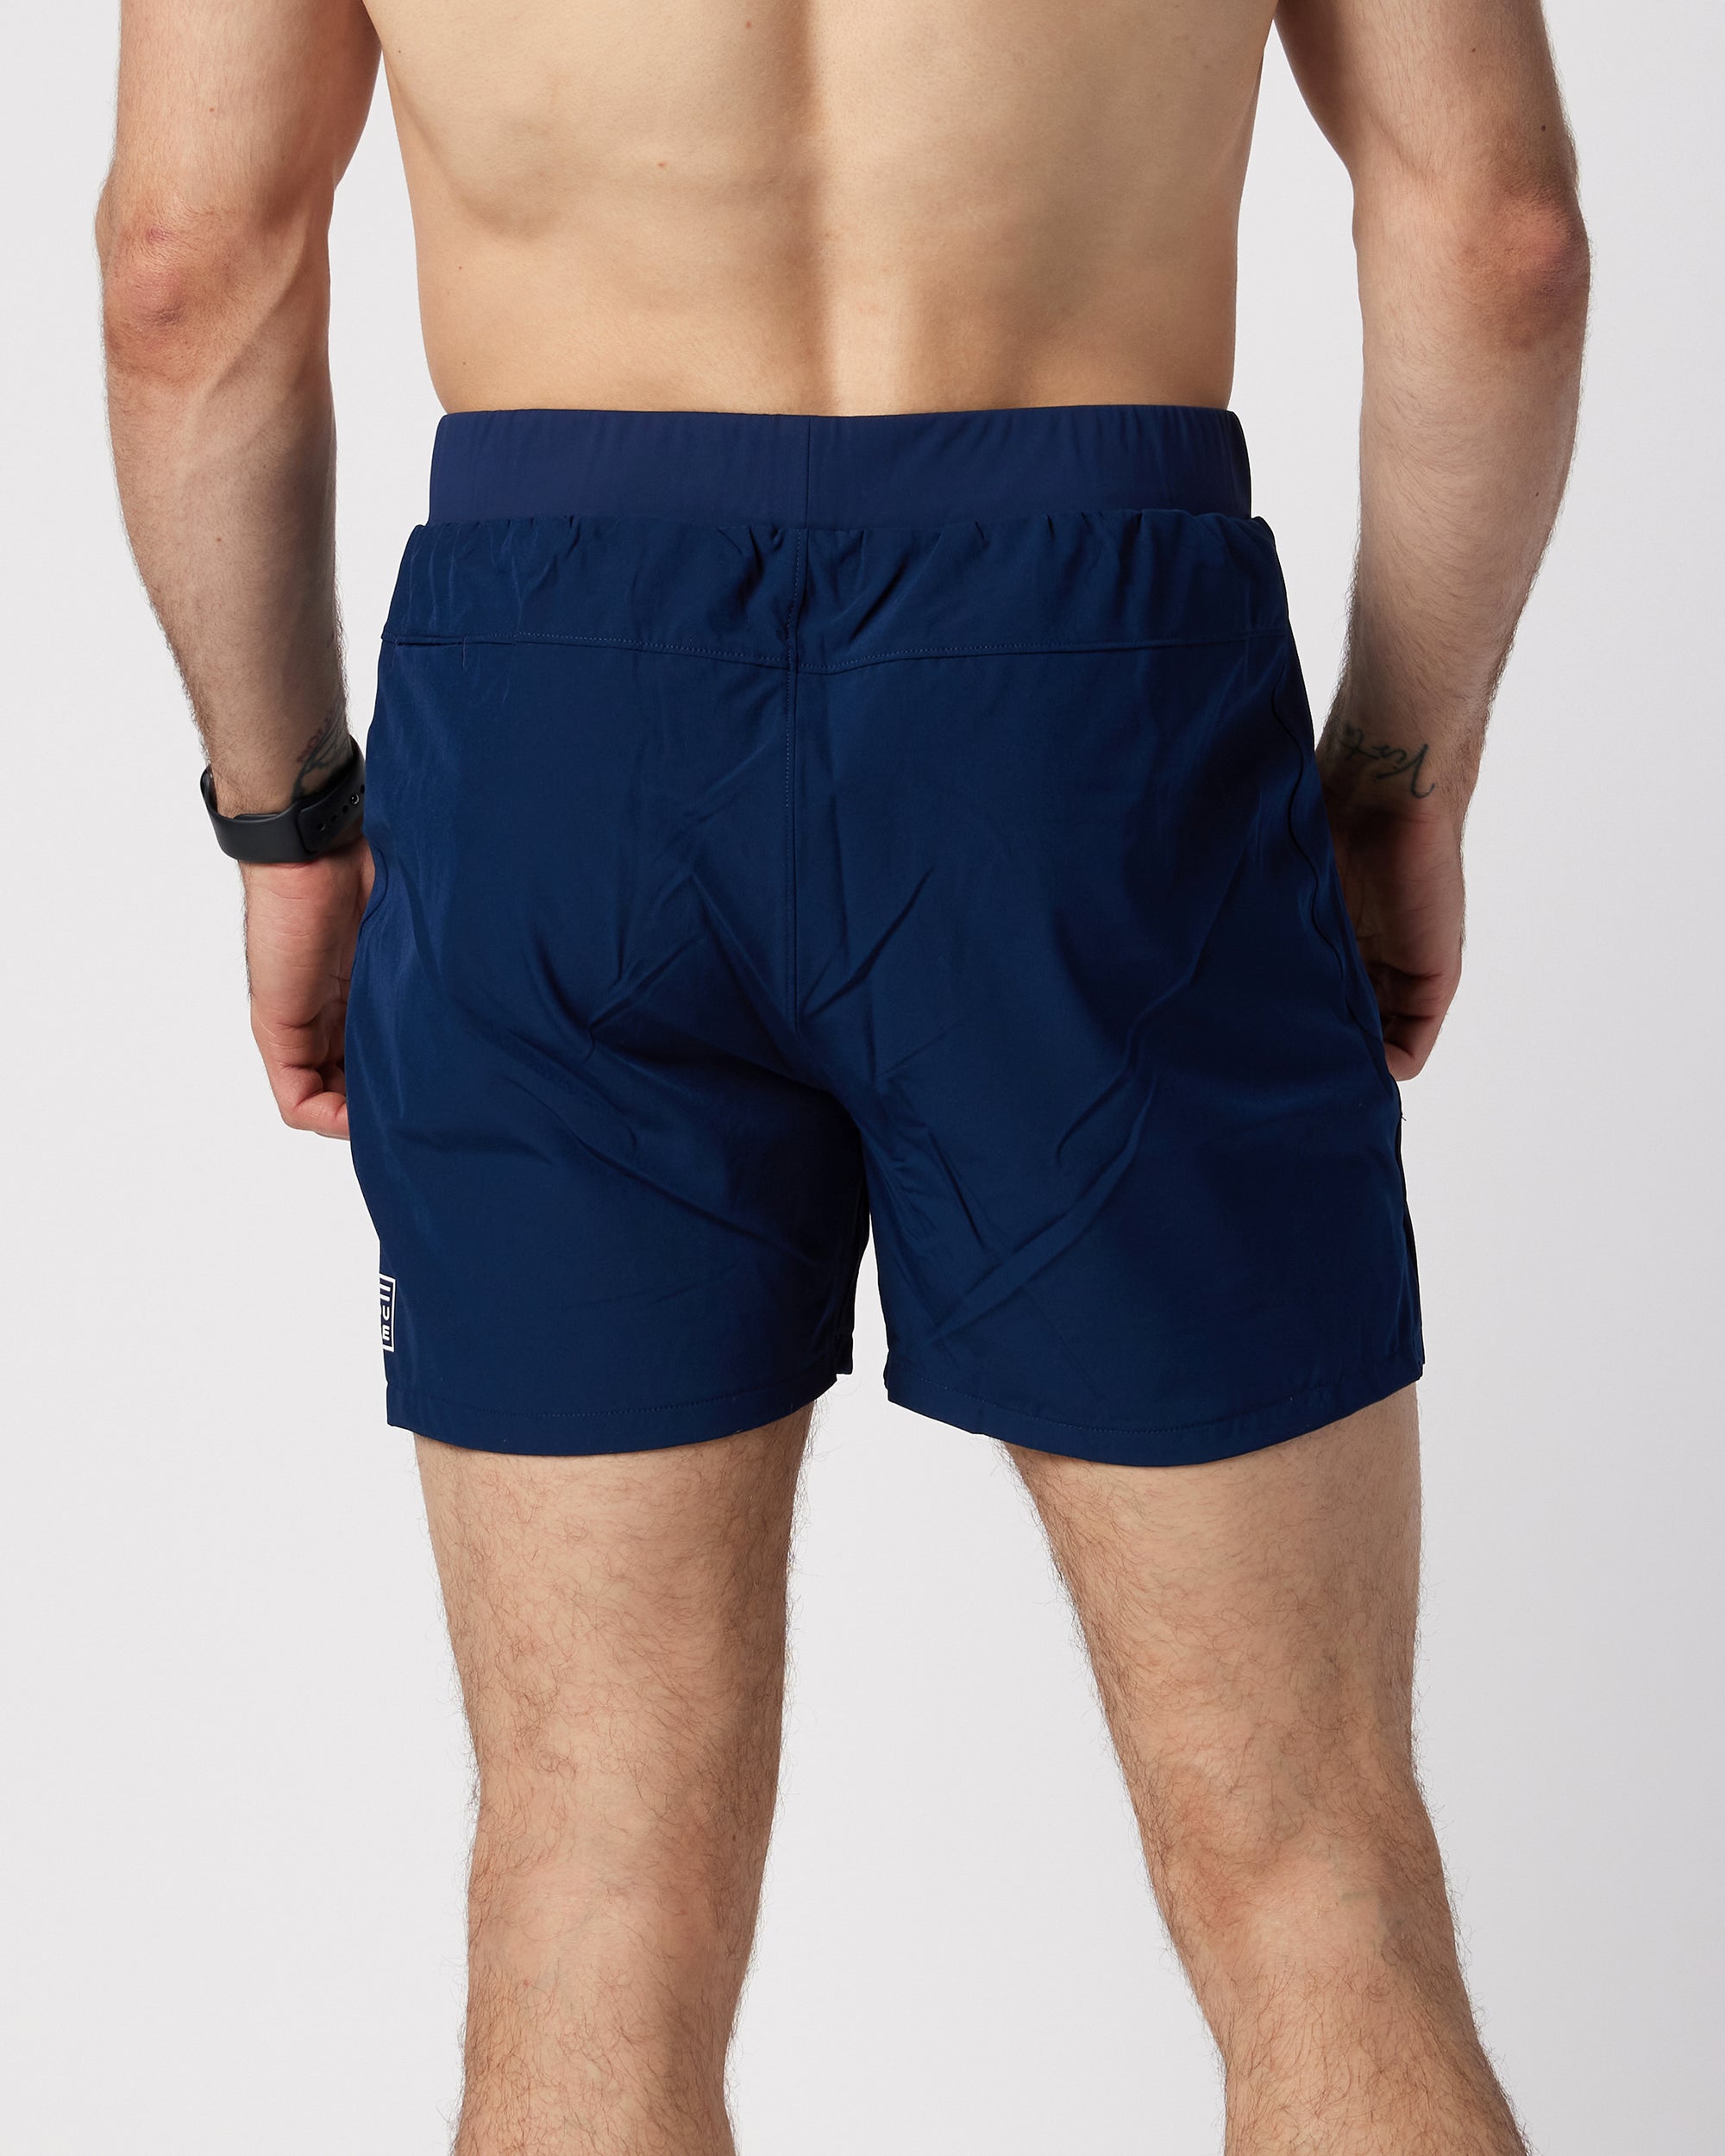 Mens navy shorts shorts